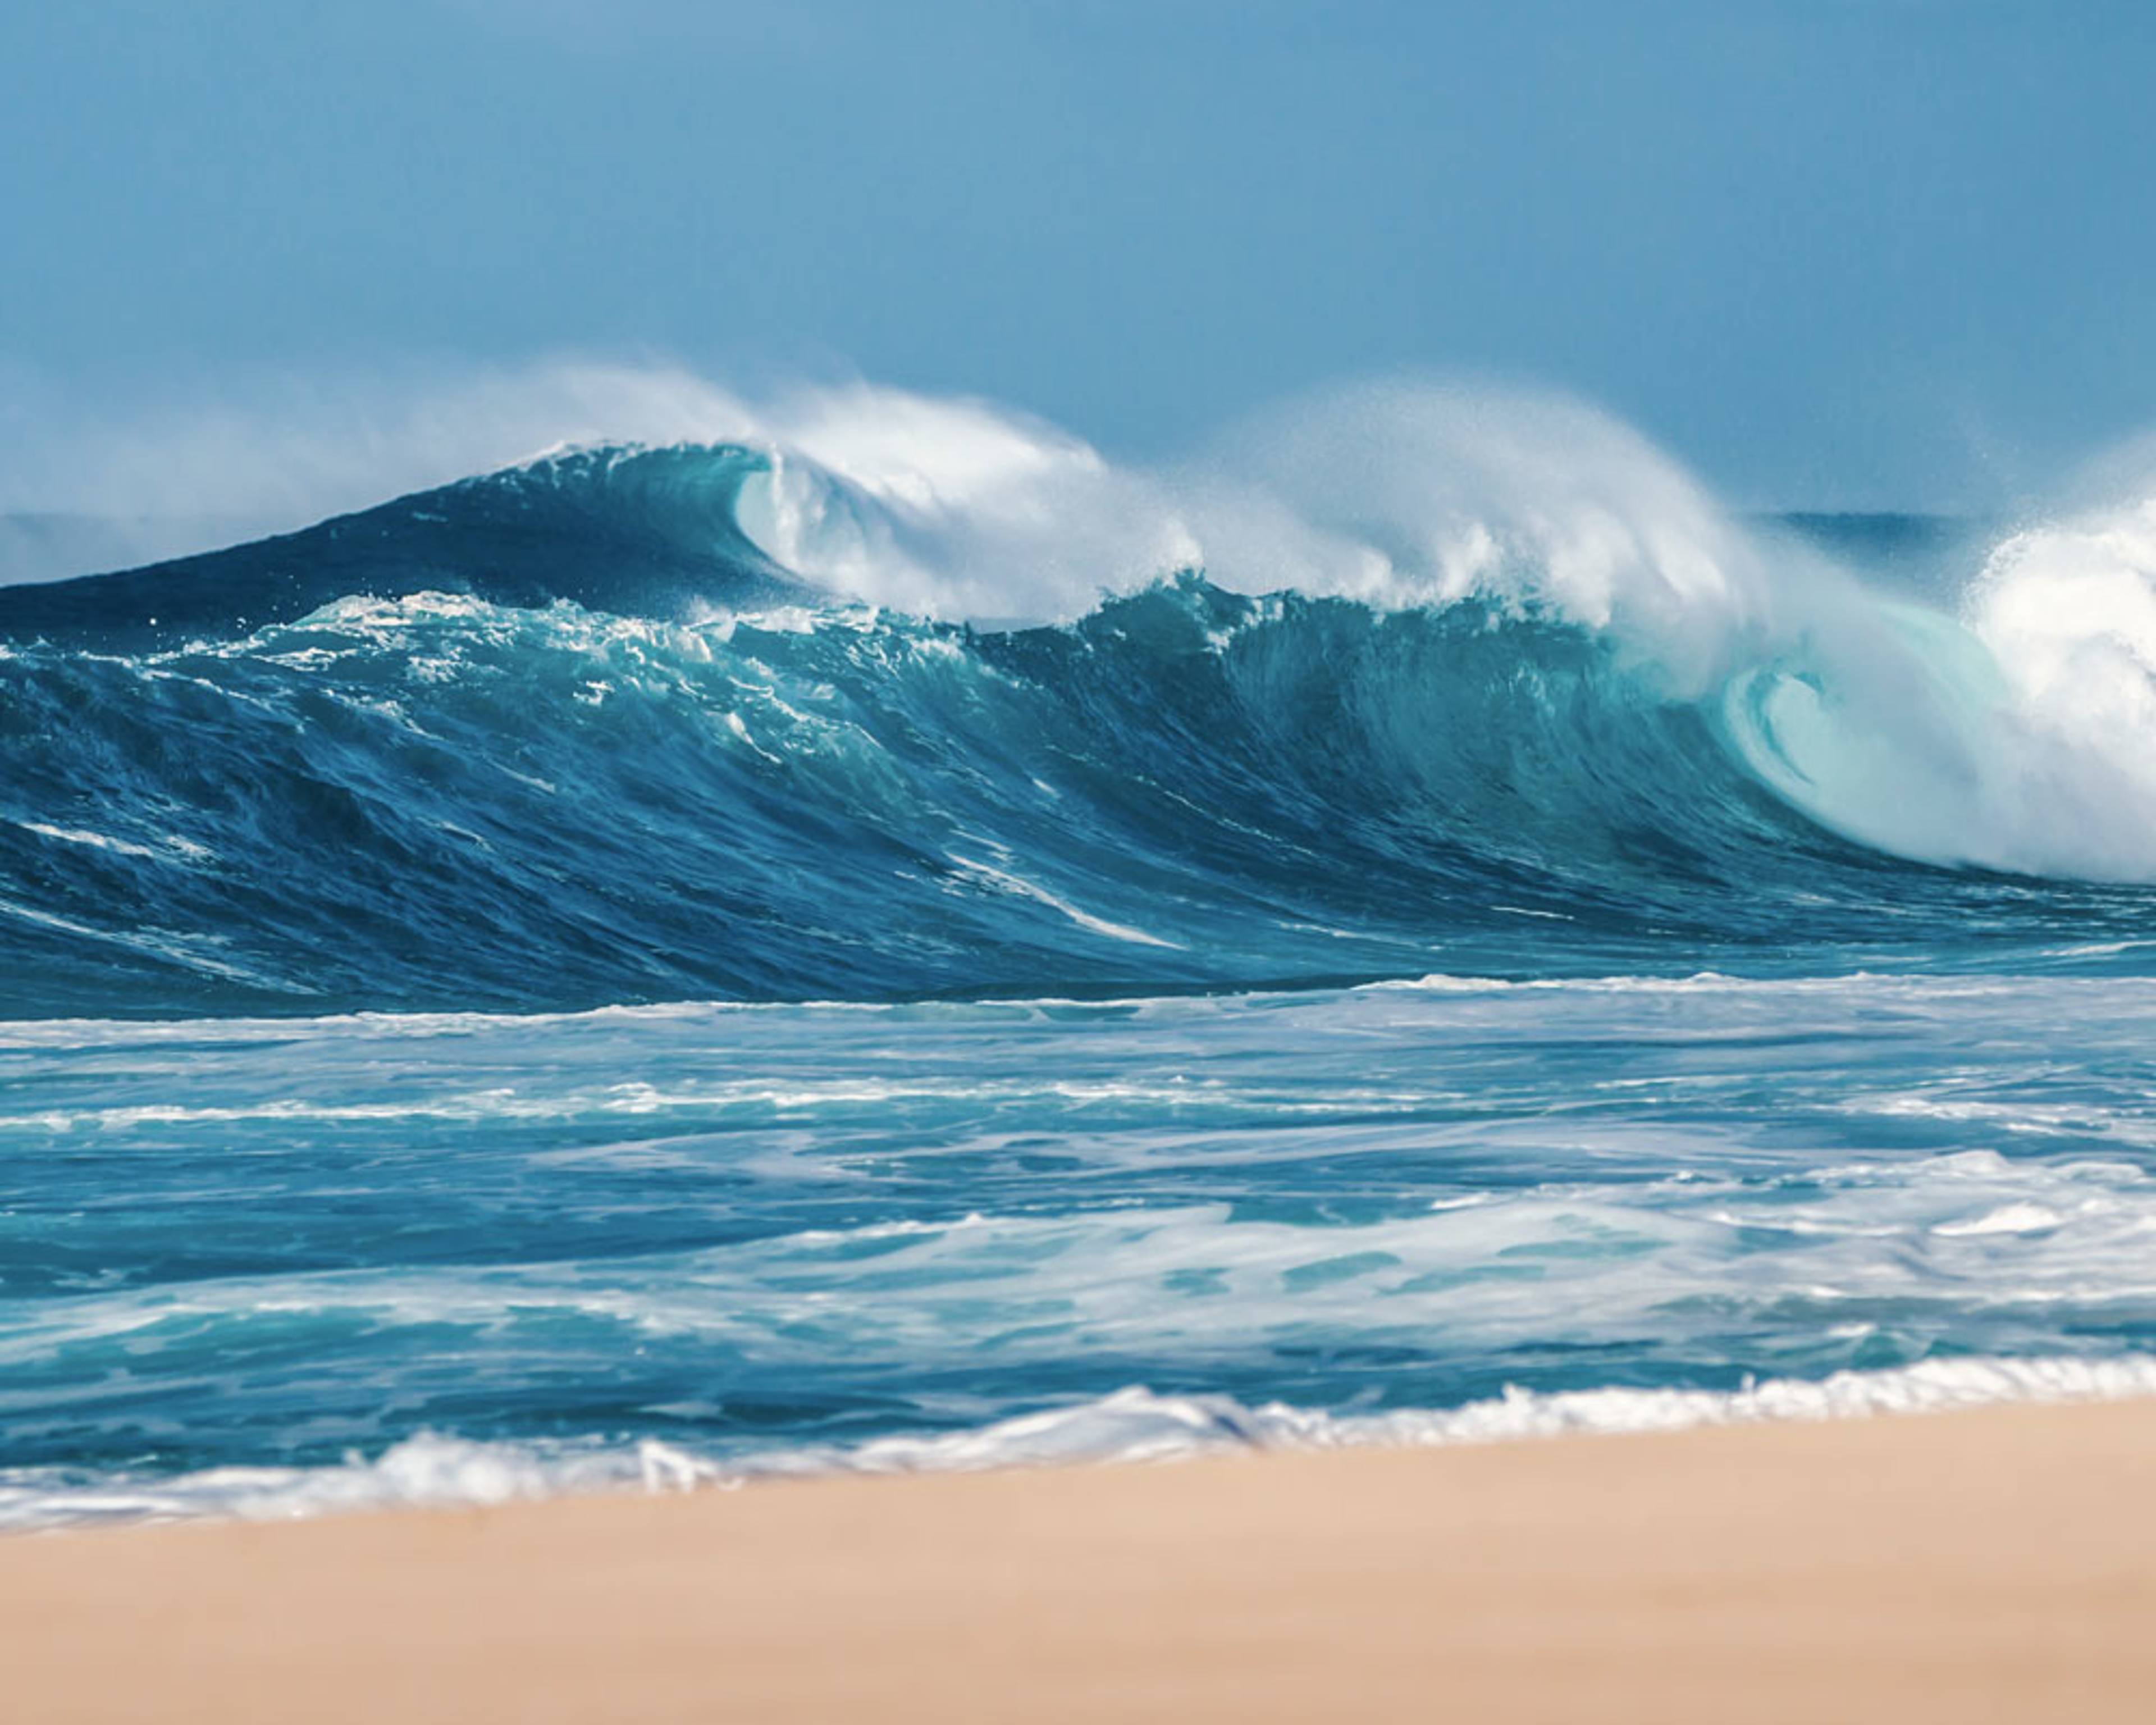 Découvrez les plus belles plages lors de votre voyage à Hawaï 100% sur mesure